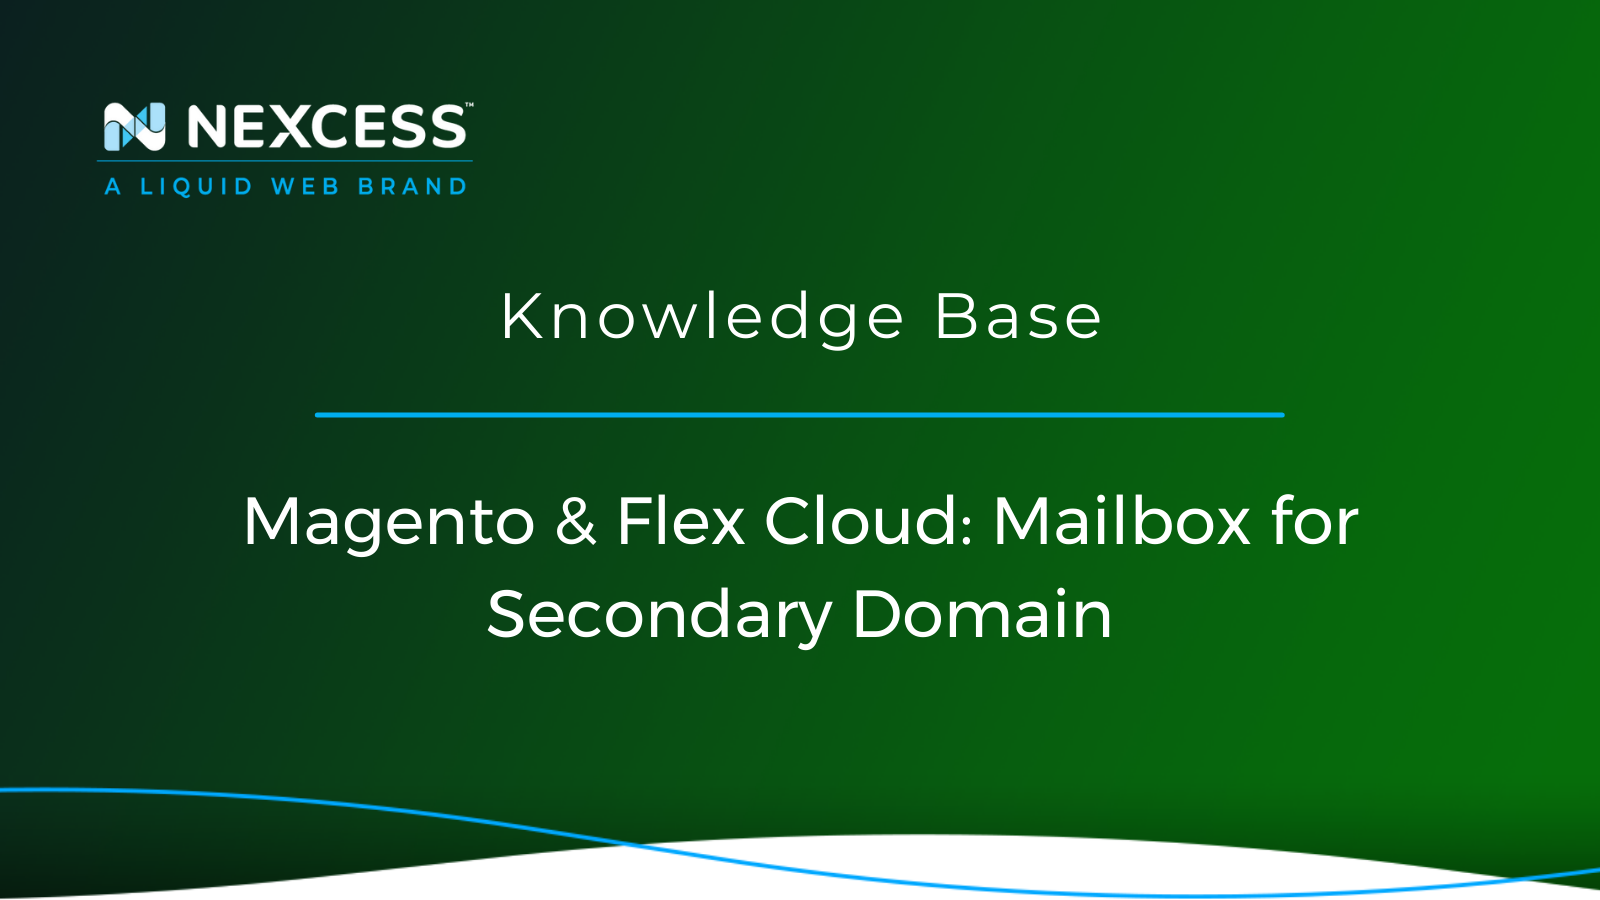 Magento & Flex Cloud: Mailbox for Secondary Domain